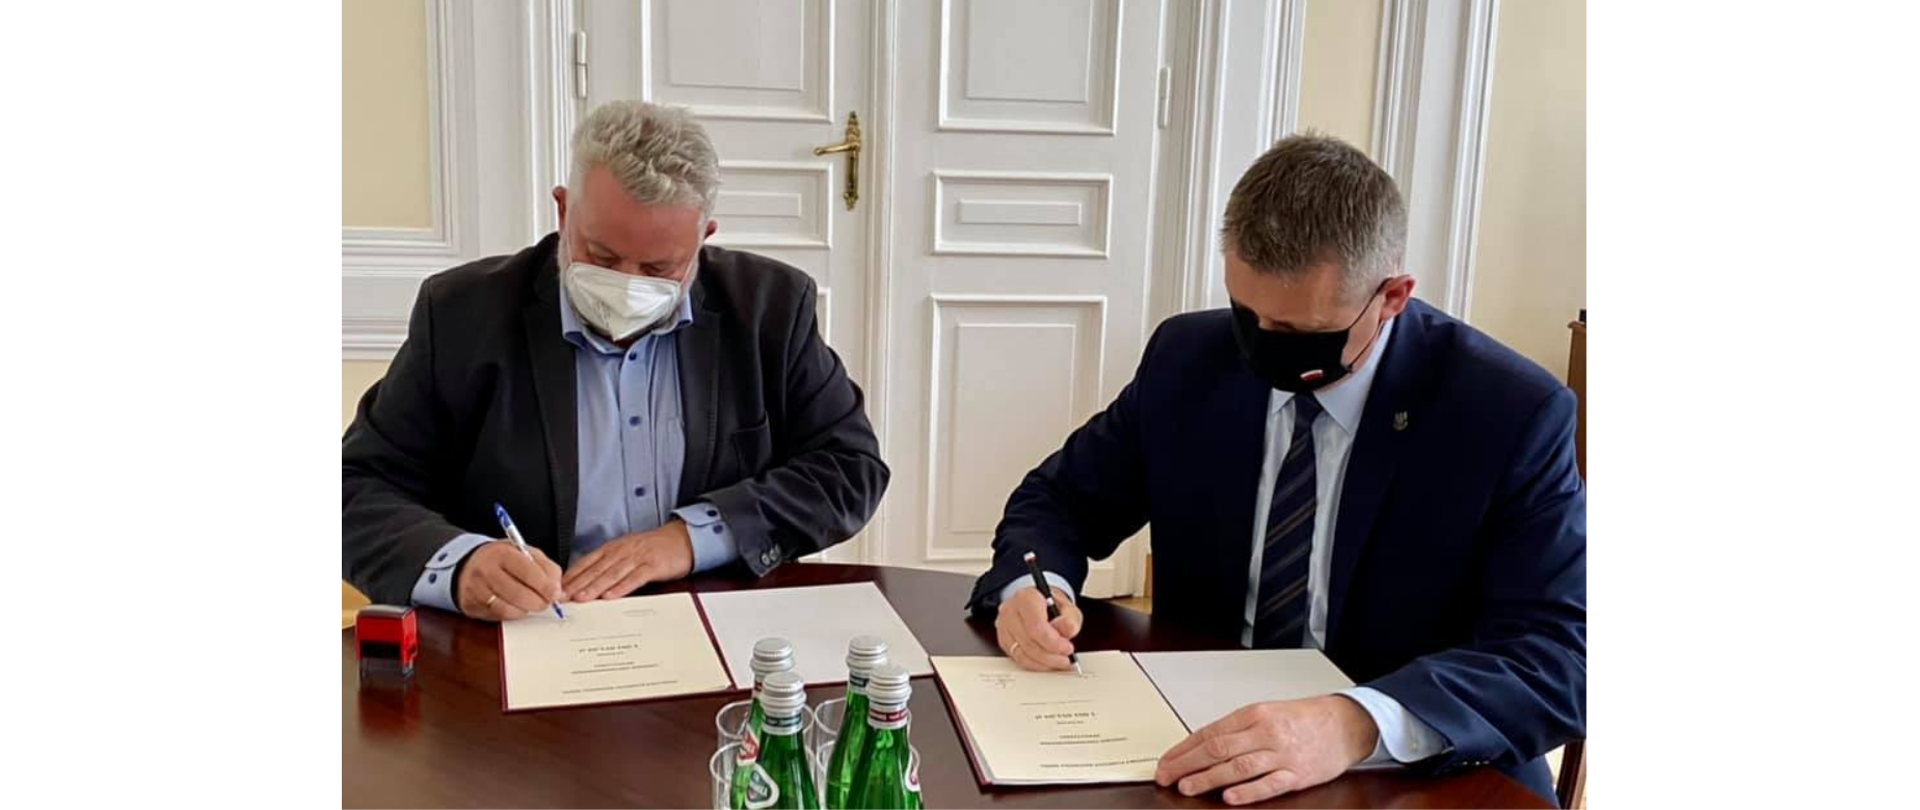 Na zdjęciu znajduje się dwóch mężczyzn podpisujących umowy